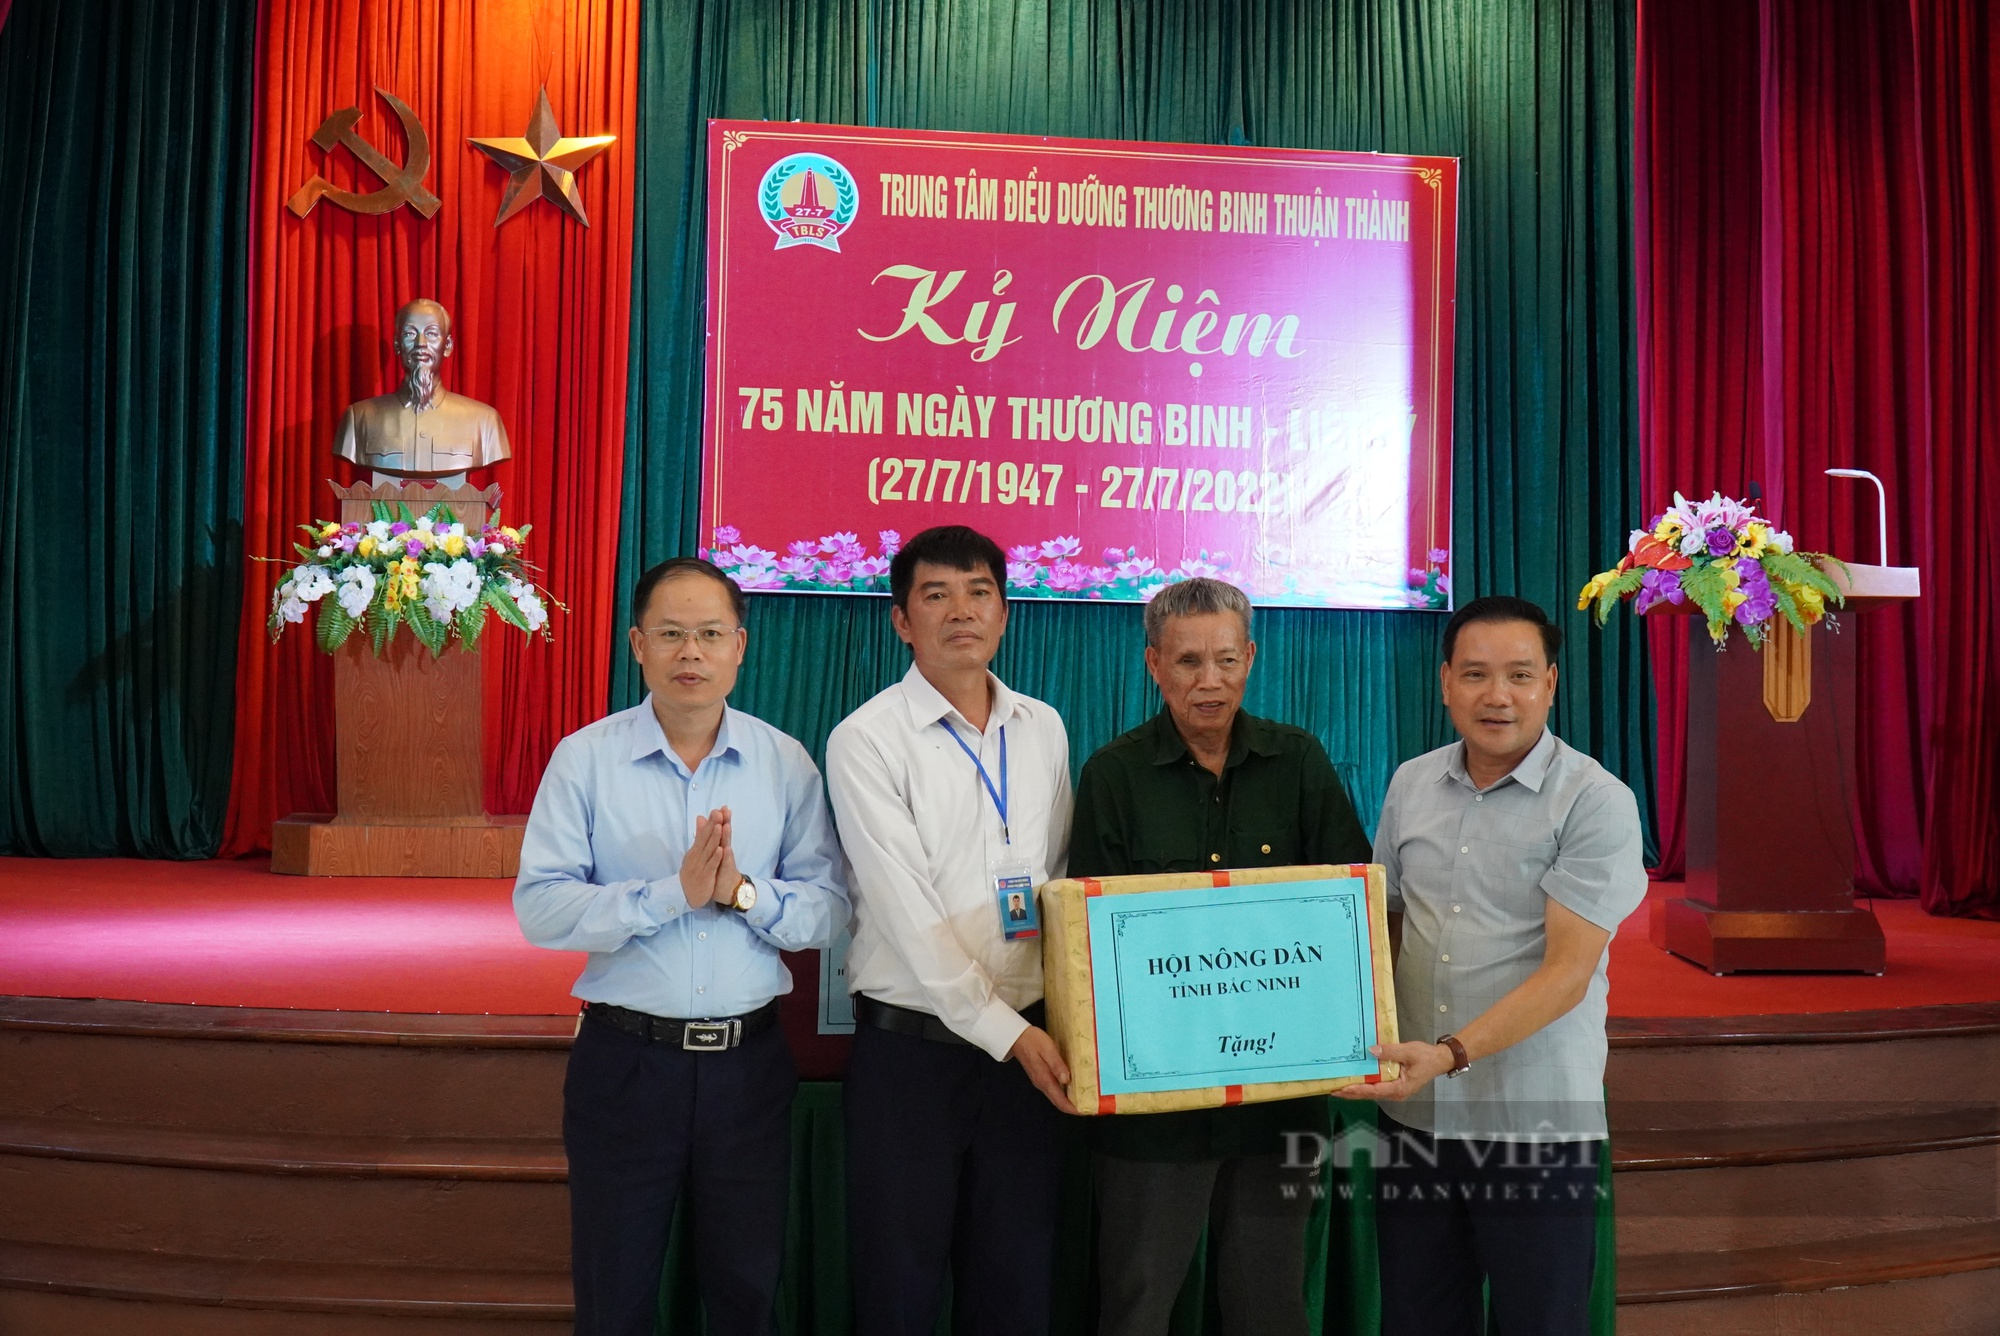 Phó Chủ tịch T.Ư Hội NDVN Nguyễn Xuân Định thăm, tặng quà Trung tâm Điều dưỡng thương binh Thuận Thành - Ảnh 5.